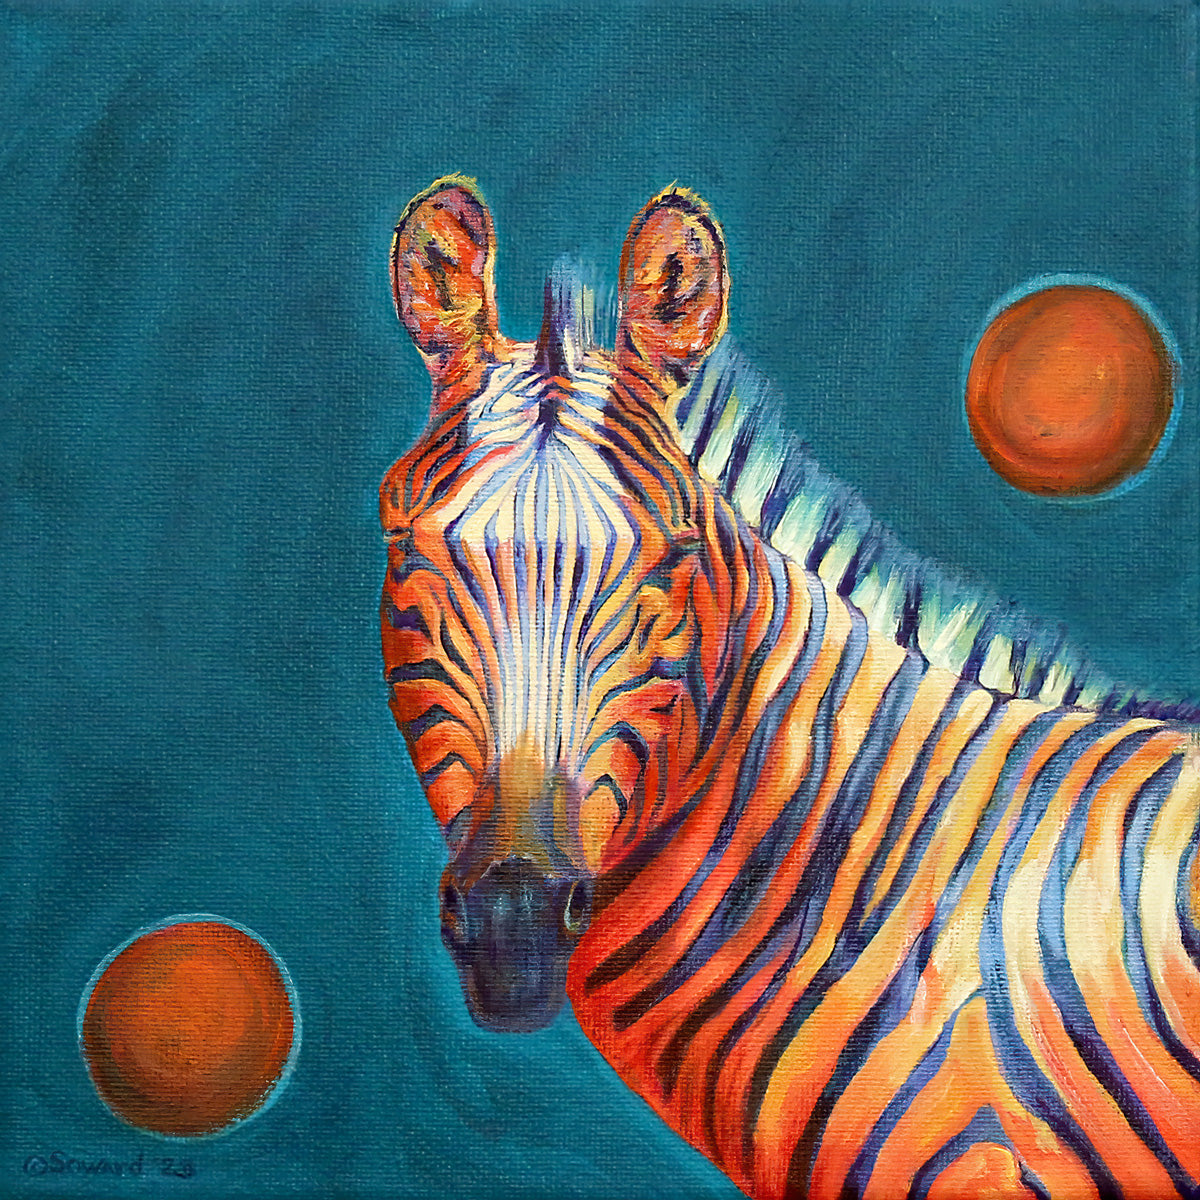 Rhymes with Orange, Zebra, Original Oil Painting